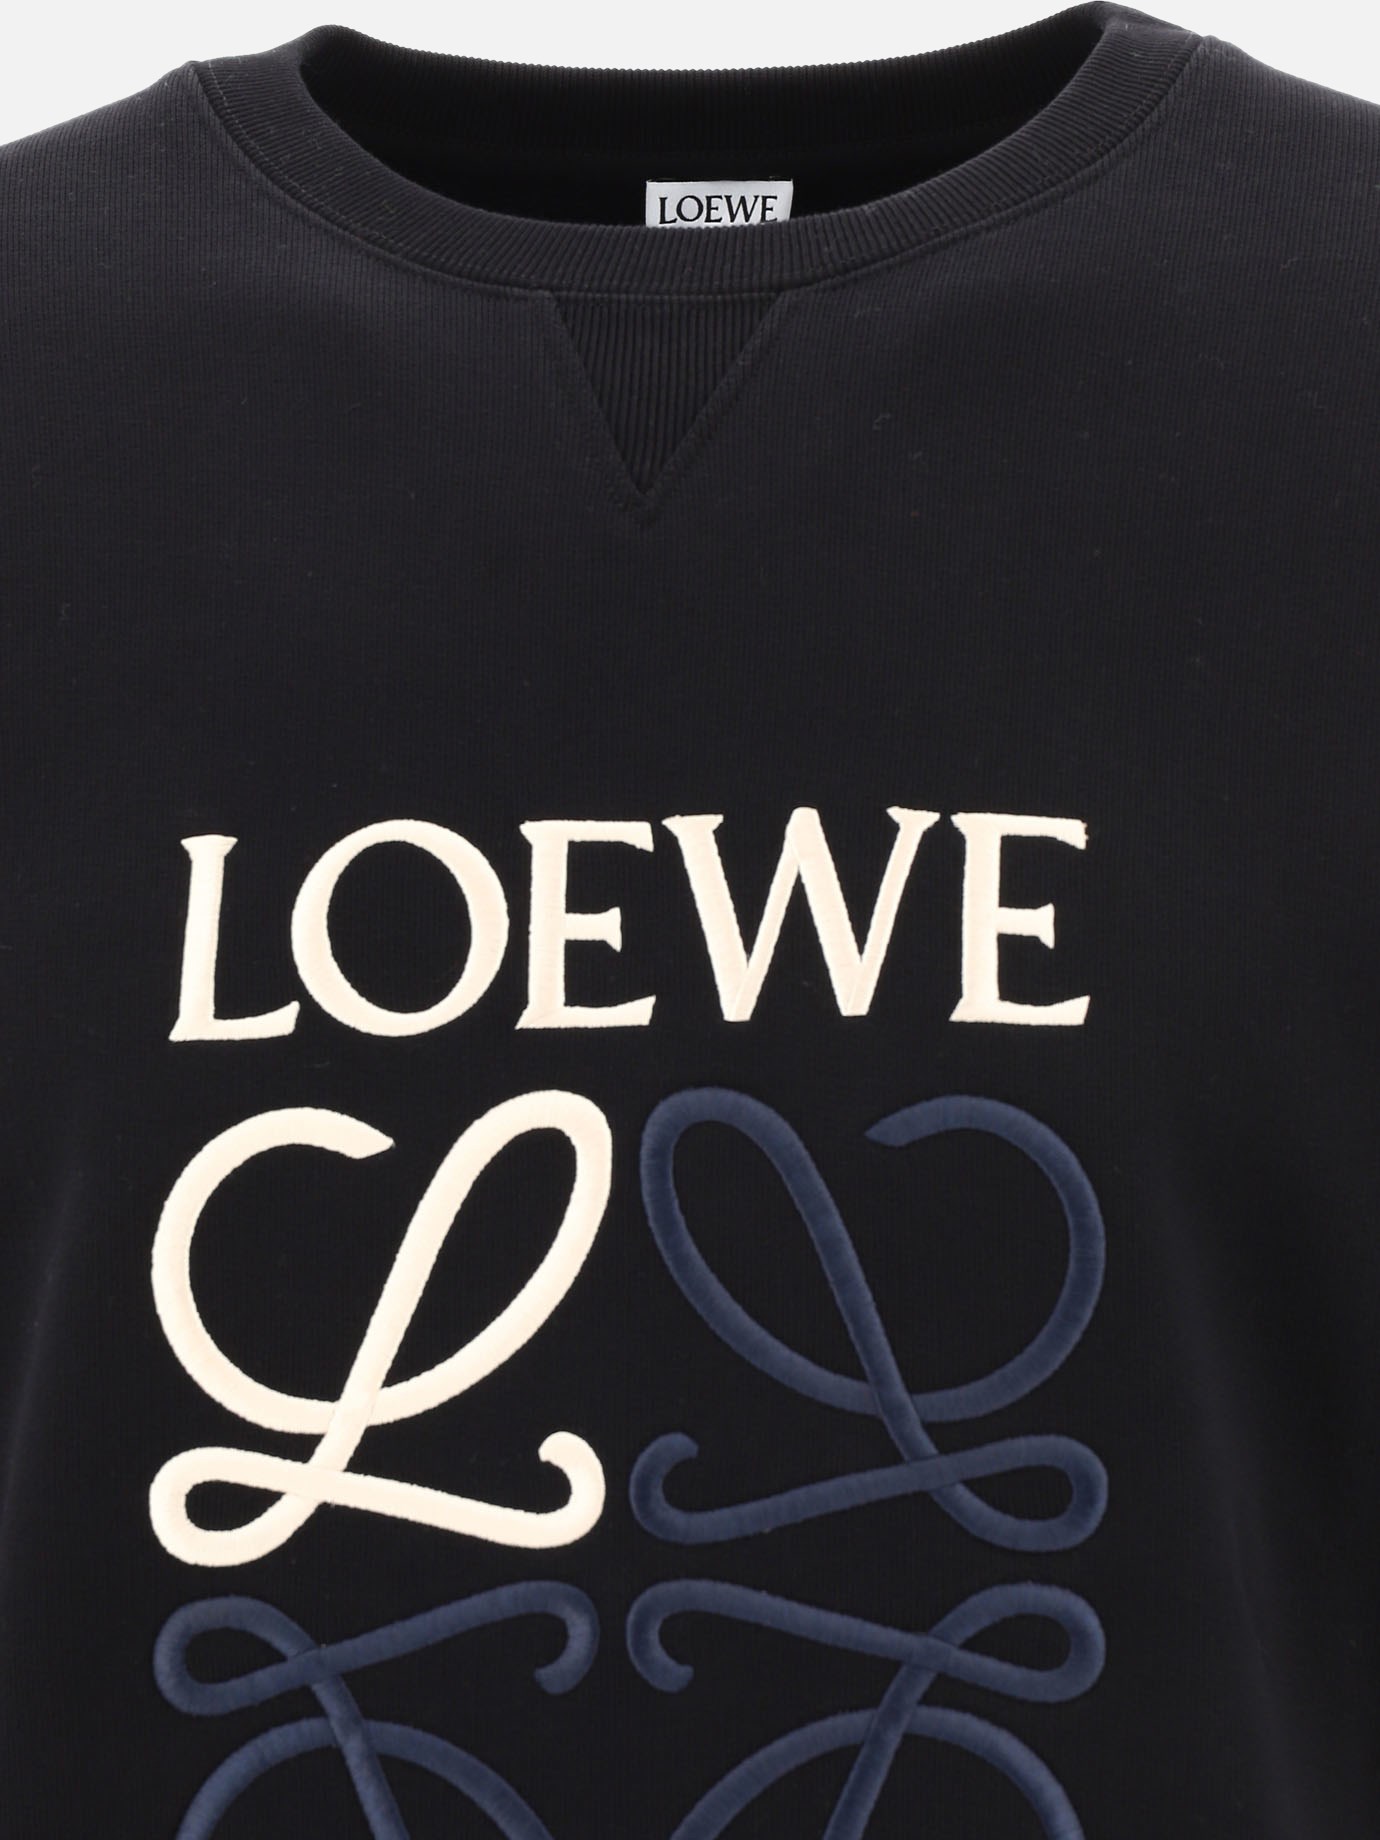  Anagram  sweatshirt by Loewe